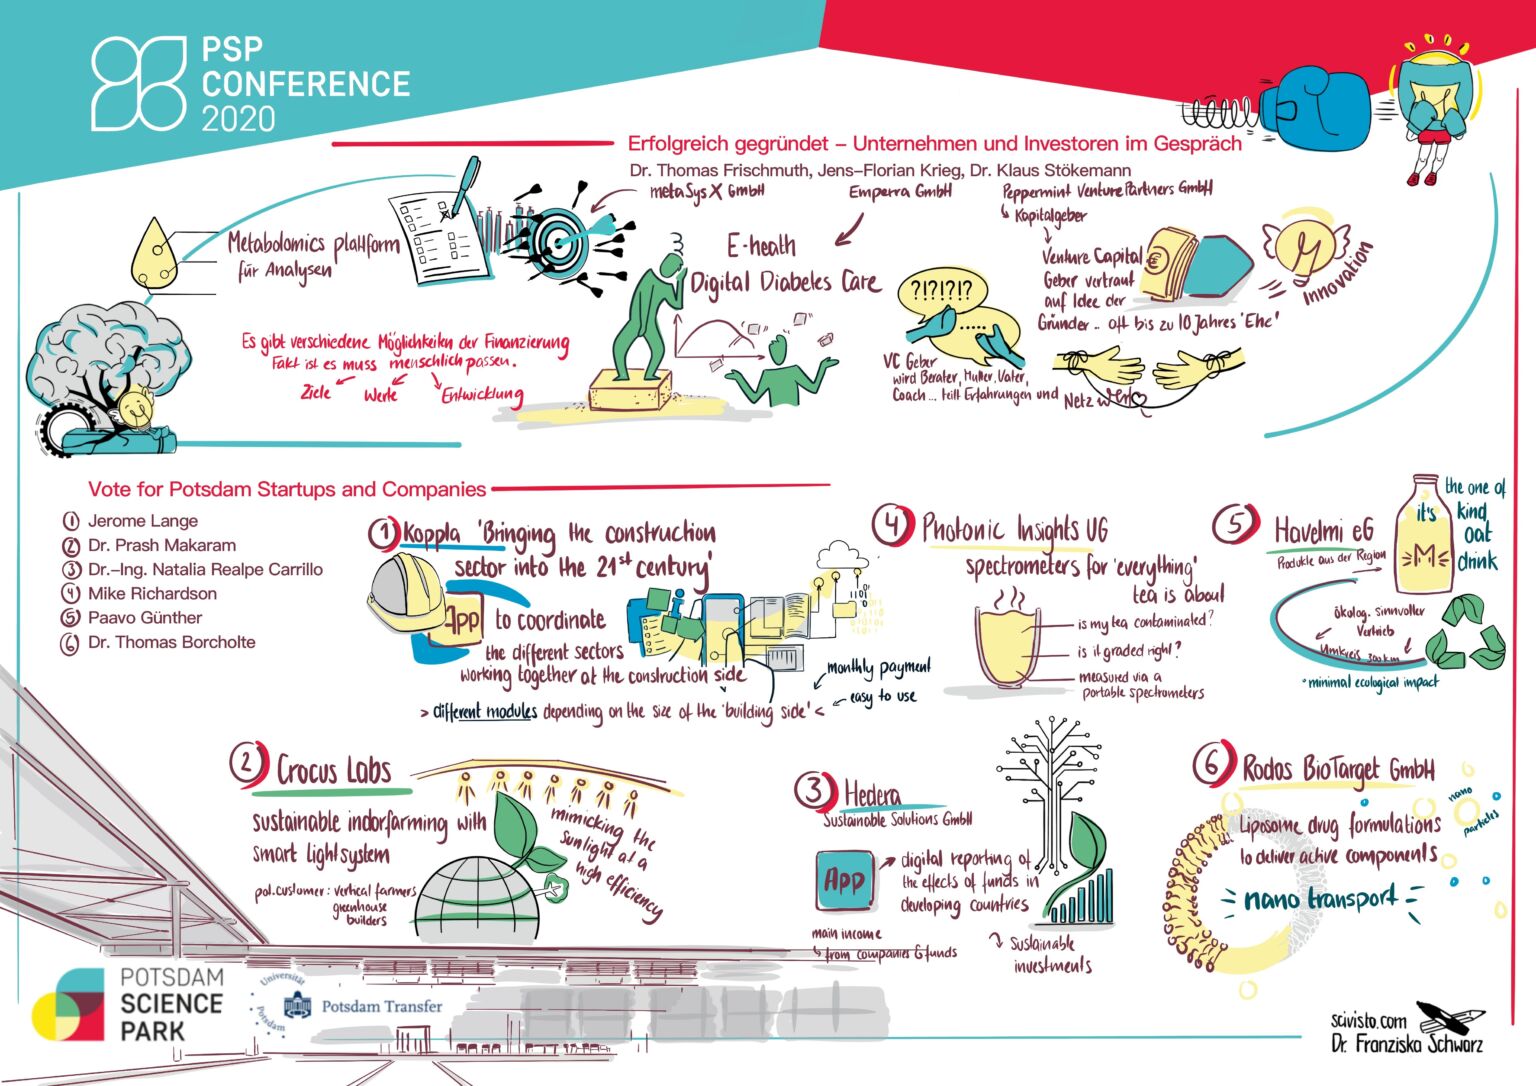 PSP Conference 2020 - Erfolgreich gegründet: Unternehmen und Investoren im Gespräch, Graphic Recording